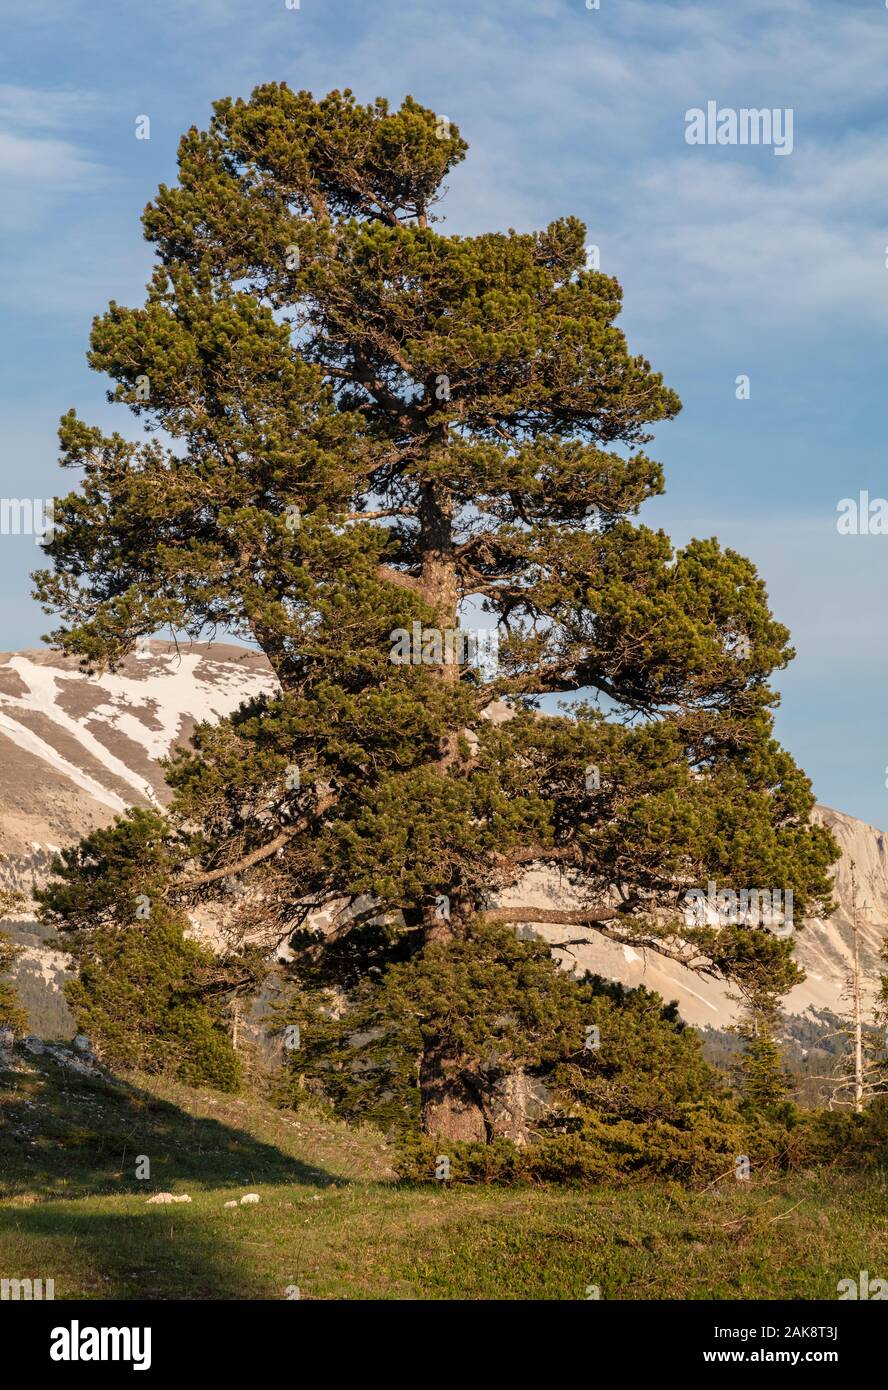 Mountain Pine, Pinus mugo Subsp uncinata, am hohen Kalkstein Hochebene, Réserve naturelle des Hauts Plateaux du Vercors Vercors Berge, Frankreich. Stockfoto